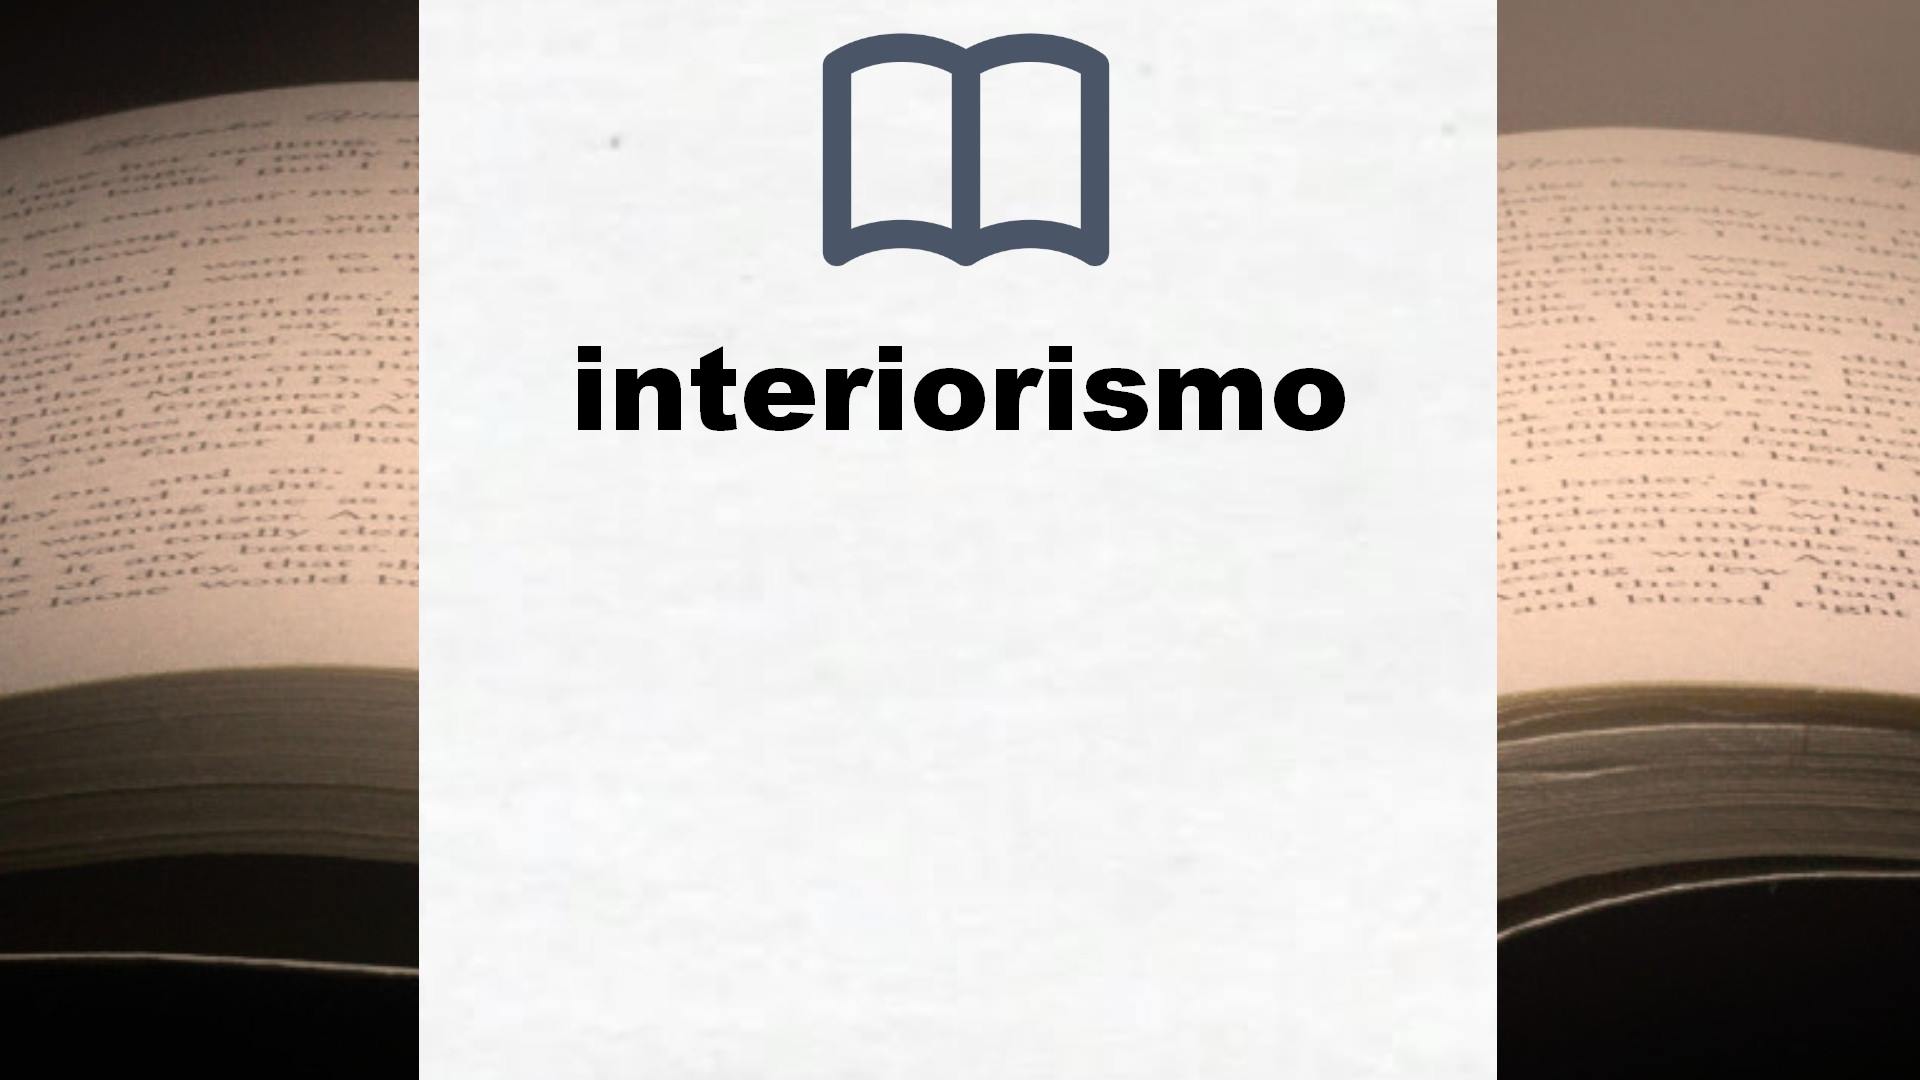 Libros sobre interiorismo